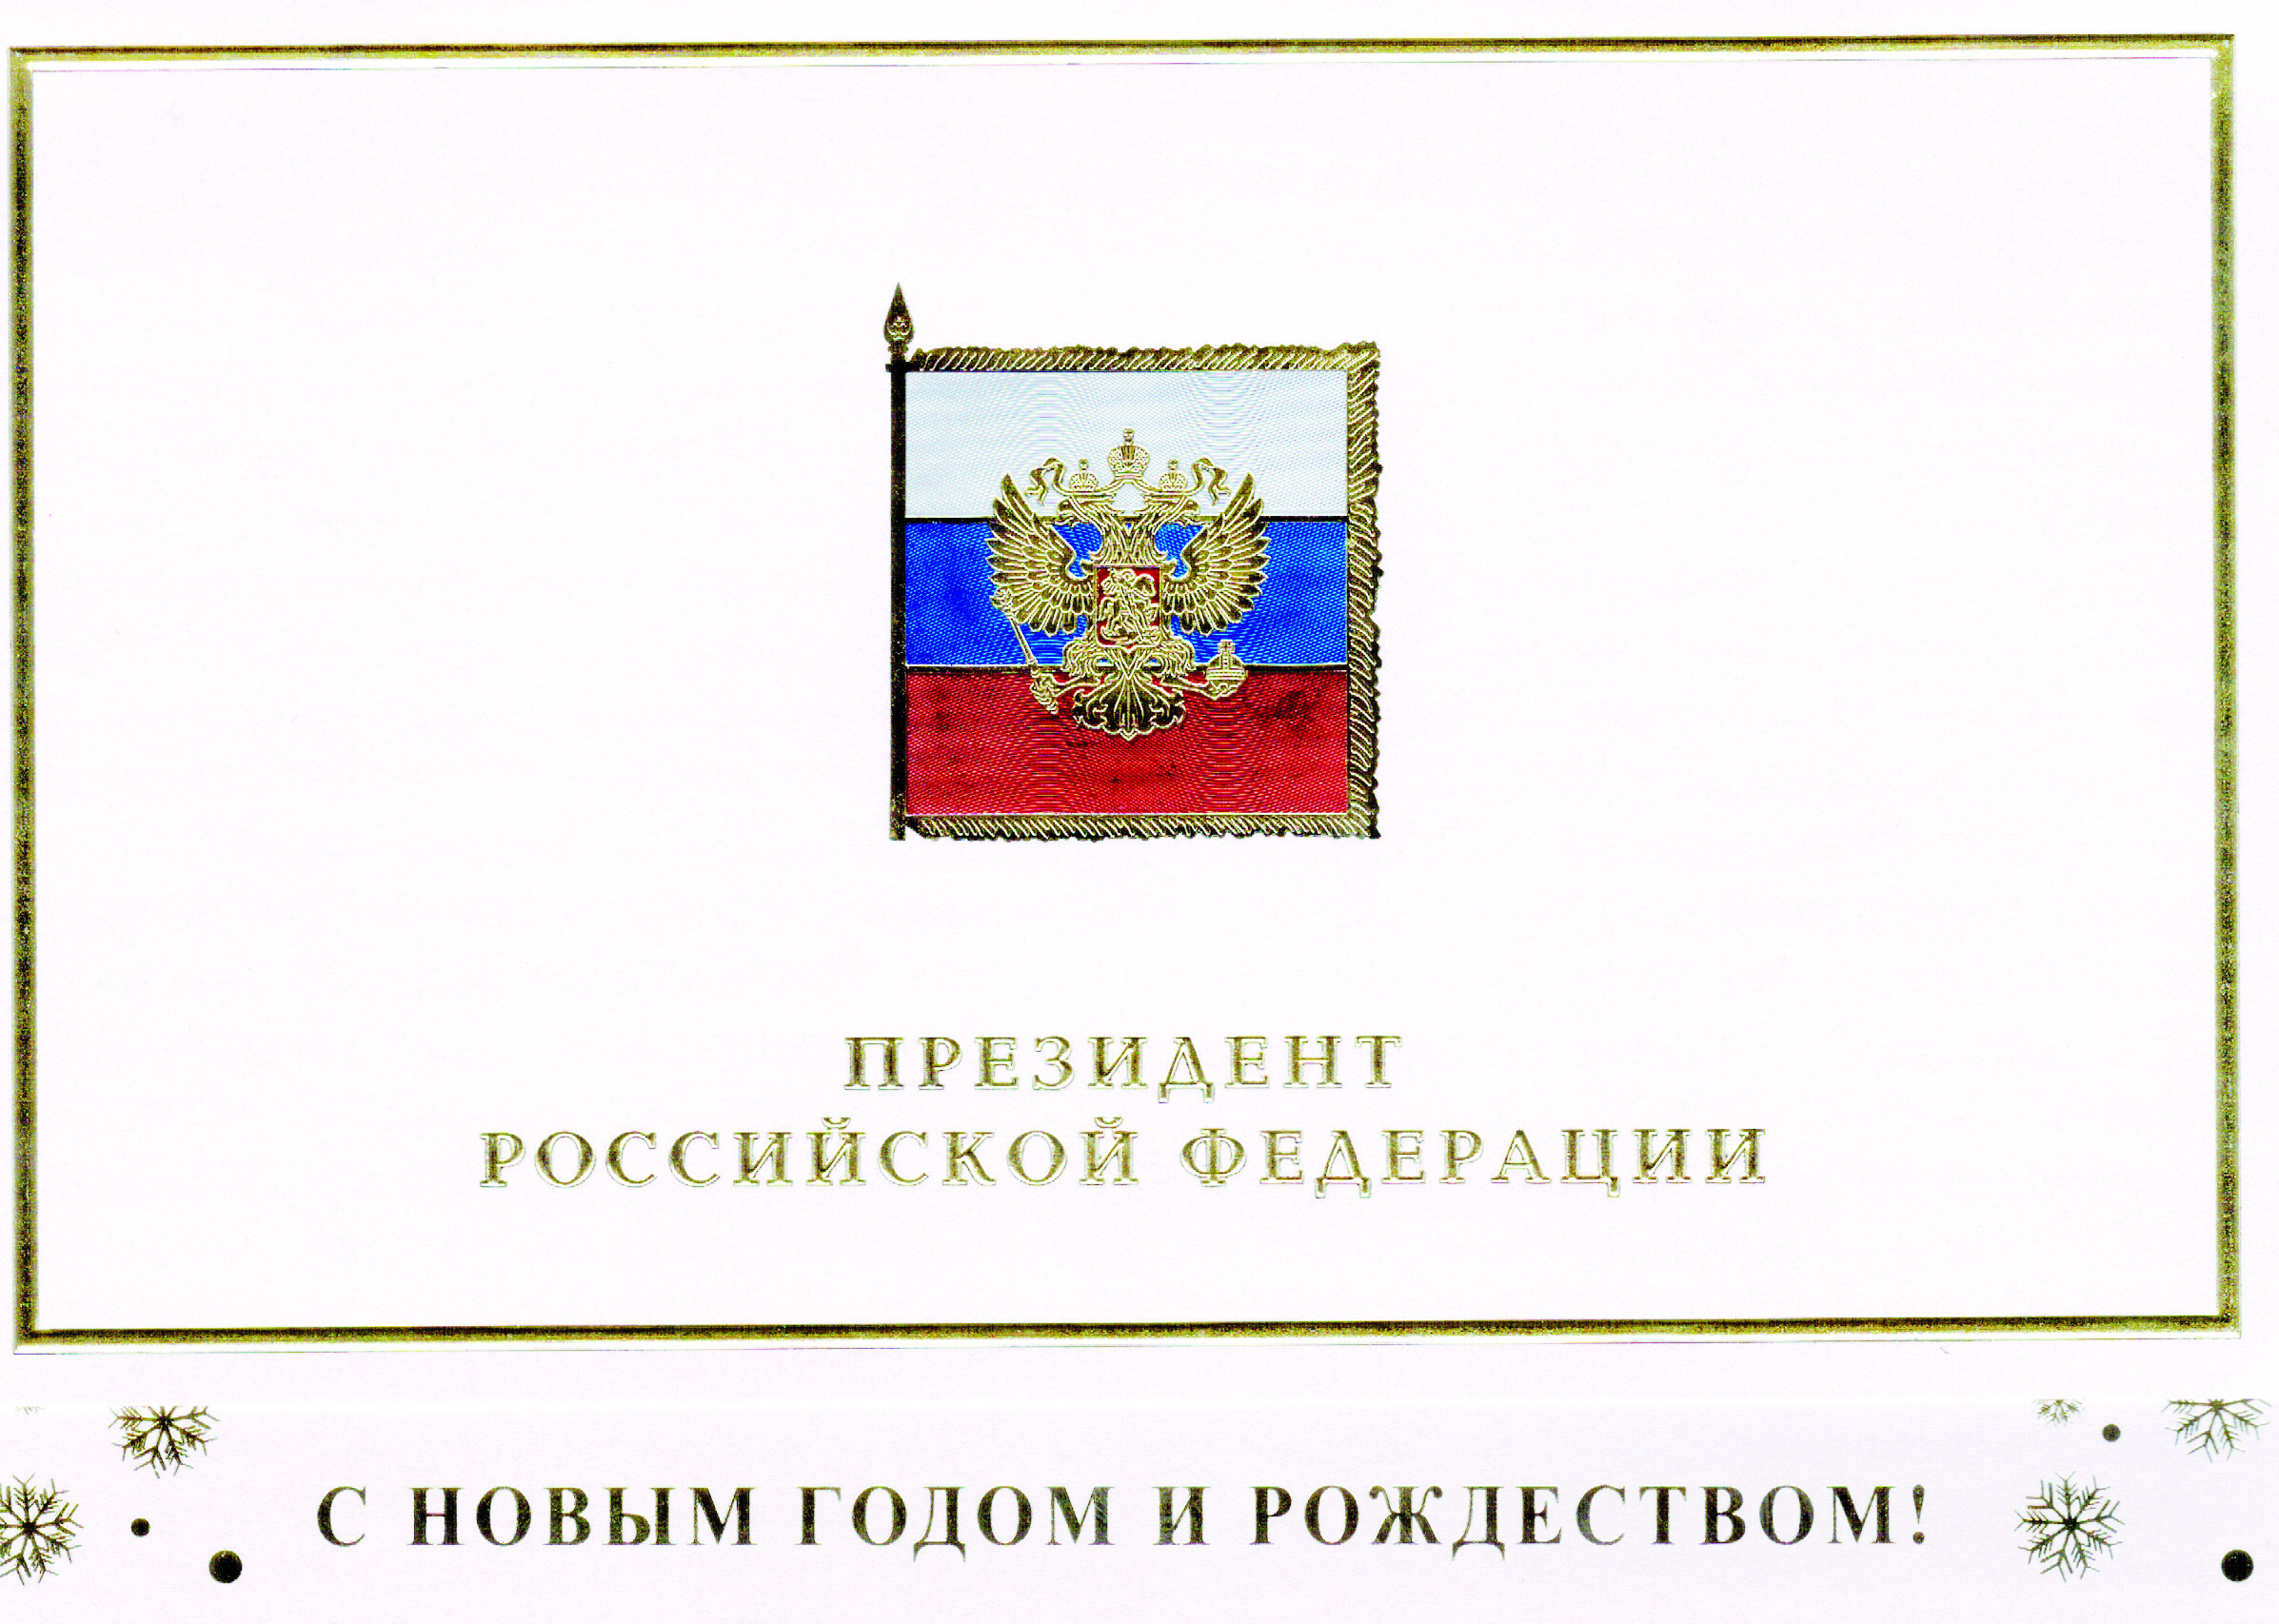 31 декабря 2014 года Президент Российской Федерации В.В.Путин направил поздравление с Новым годом и Рождеством Председателю Исполкома НДС России В.Н.Понявину.